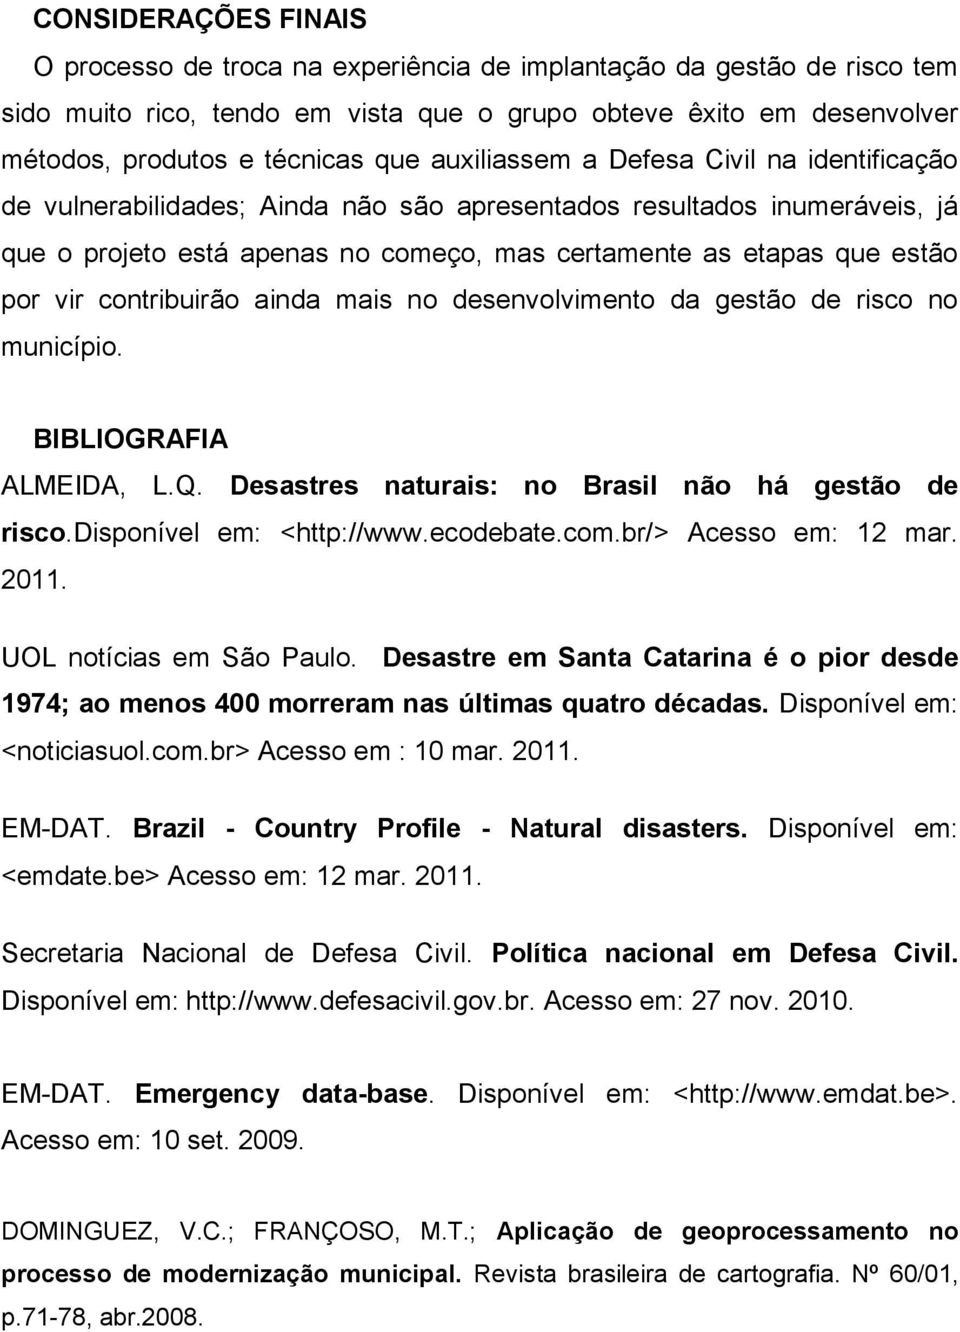 contribuirão ainda mais no desenvolvimento da gestão de risco no município. BIBLIOGRAFIA ALMEIDA, L.Q. Desastres naturais: no Brasil não há gestão de risco.disponível em: <http://www.ecodebate.com.